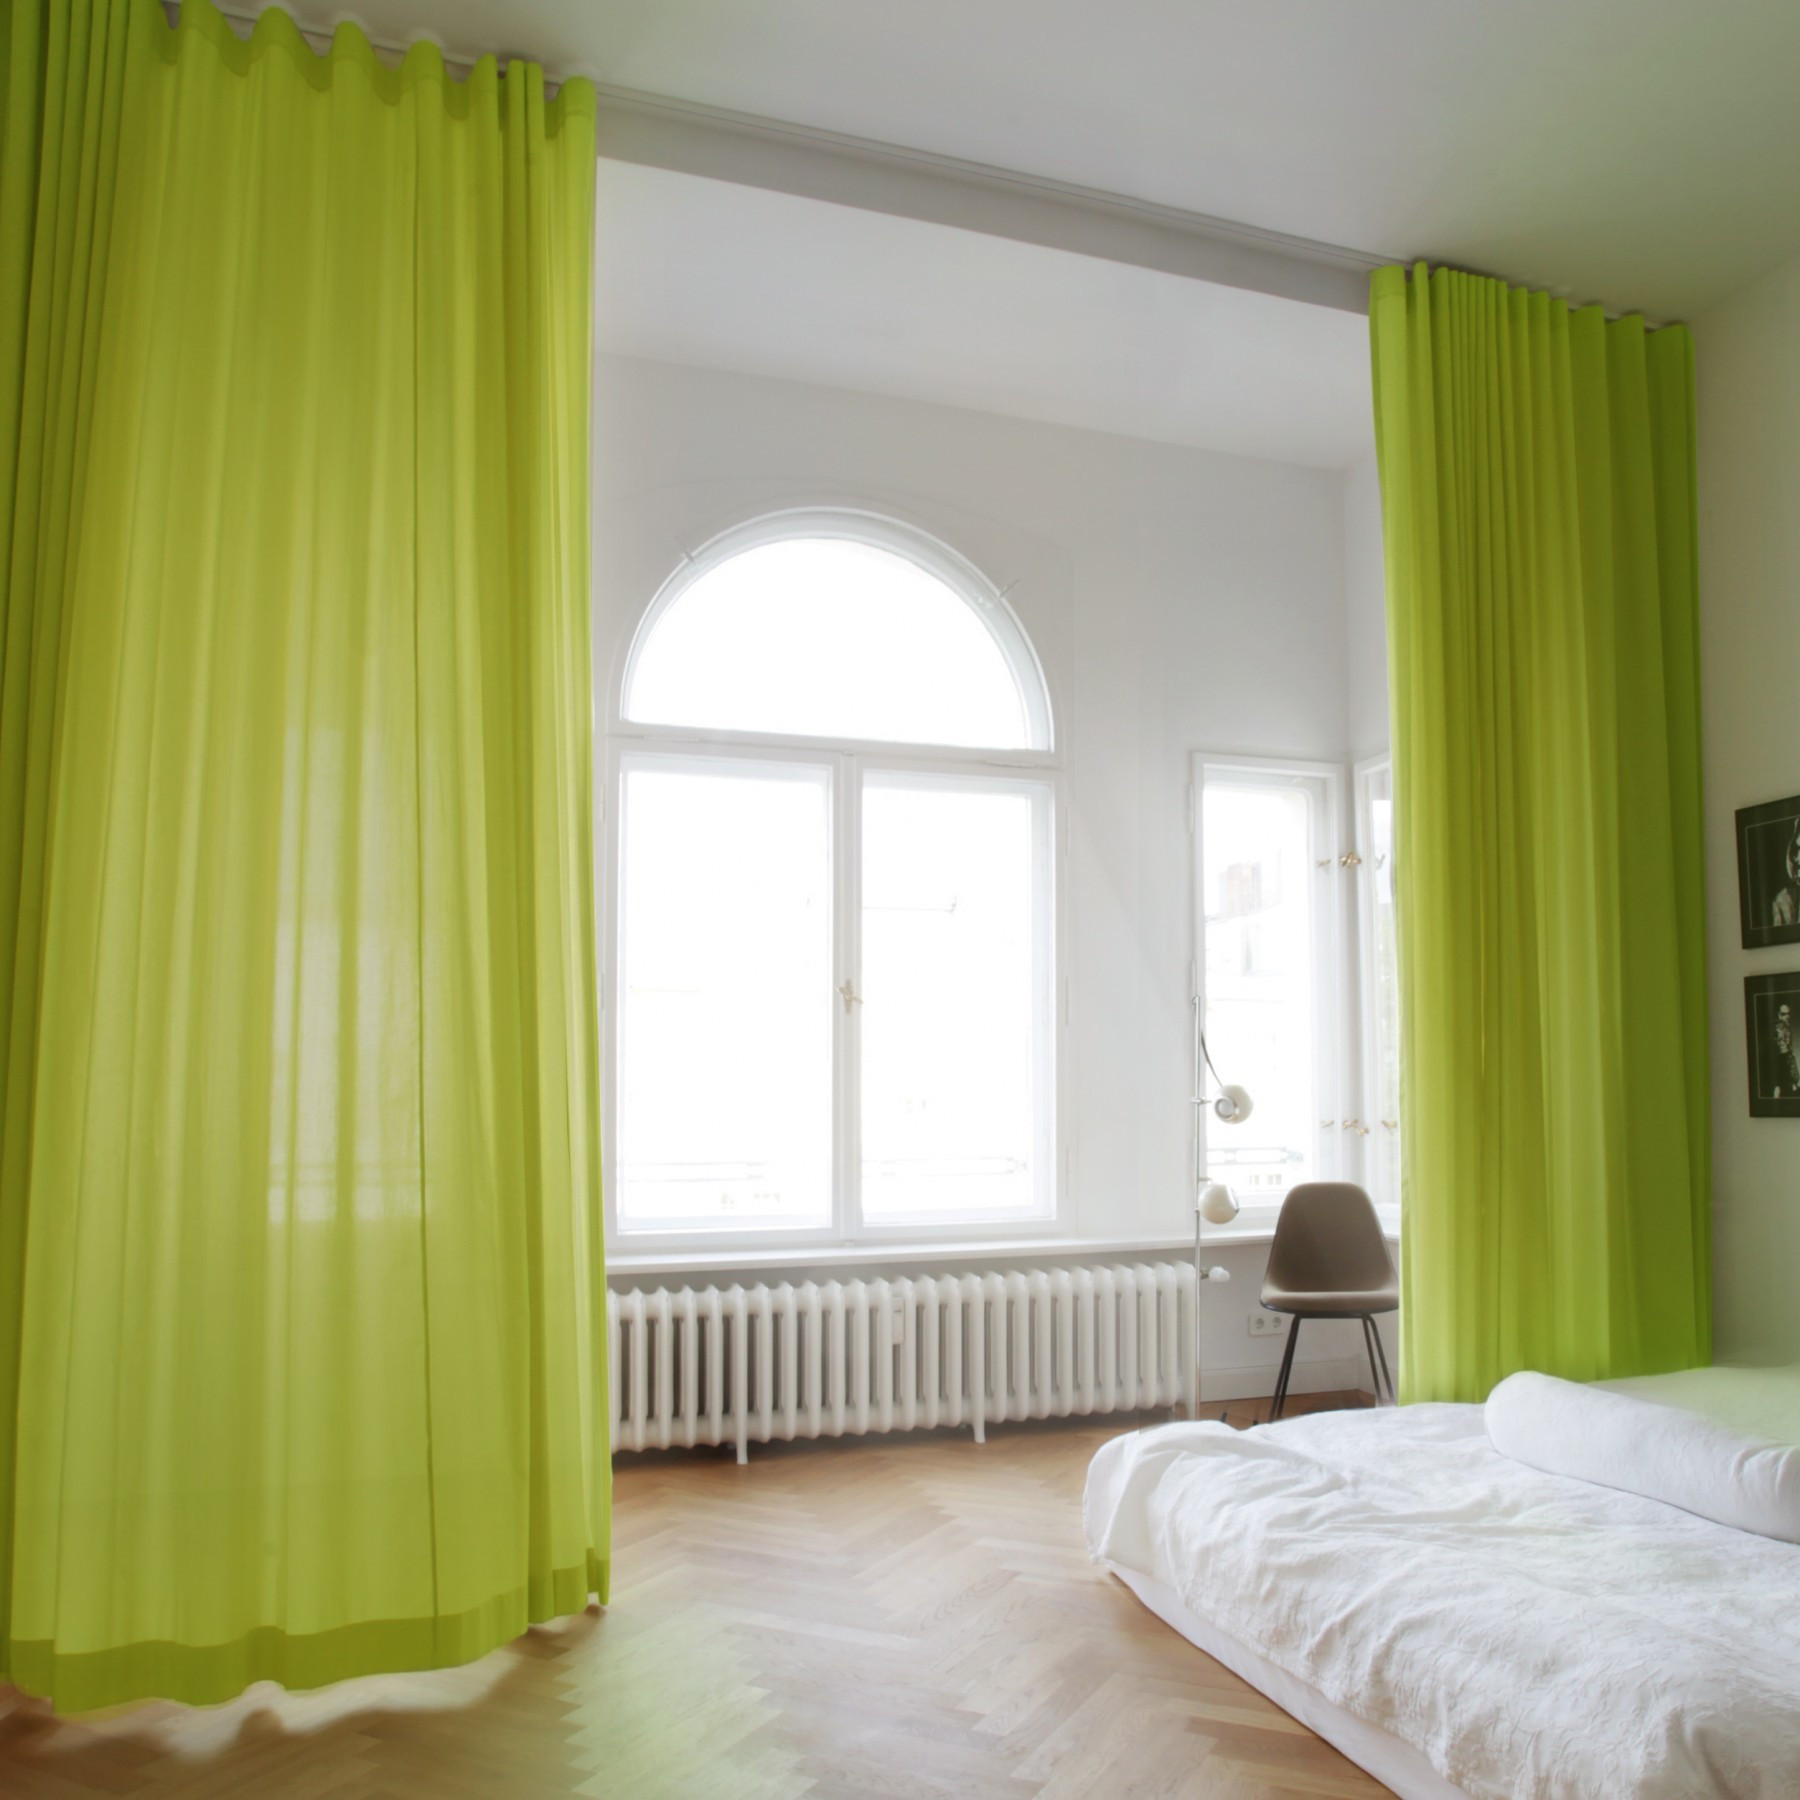 Deckenschiene Vorhang
 Grüner Vorhang Adele mit Deckenschiene Linus the curtain